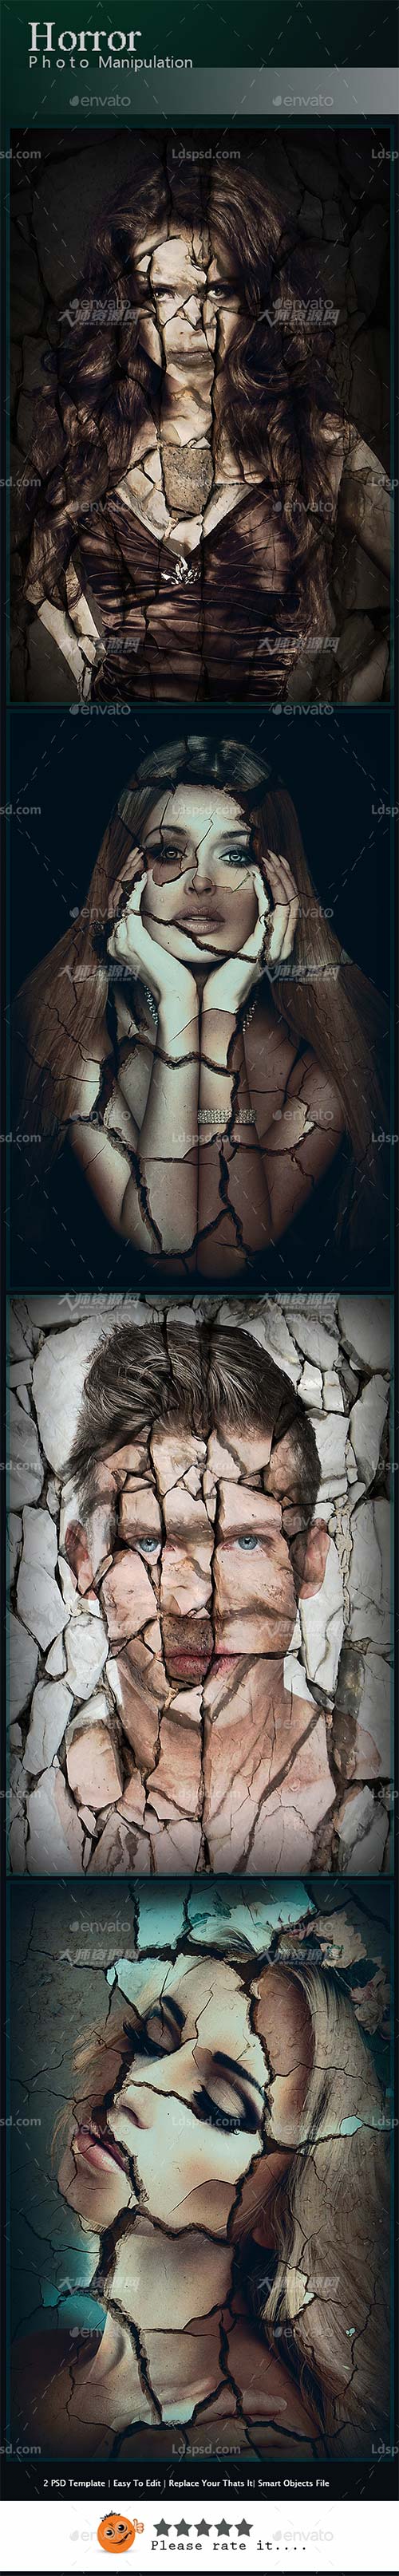 Horror Photo Manipulation,2个断裂艺术风格的图像框架模板